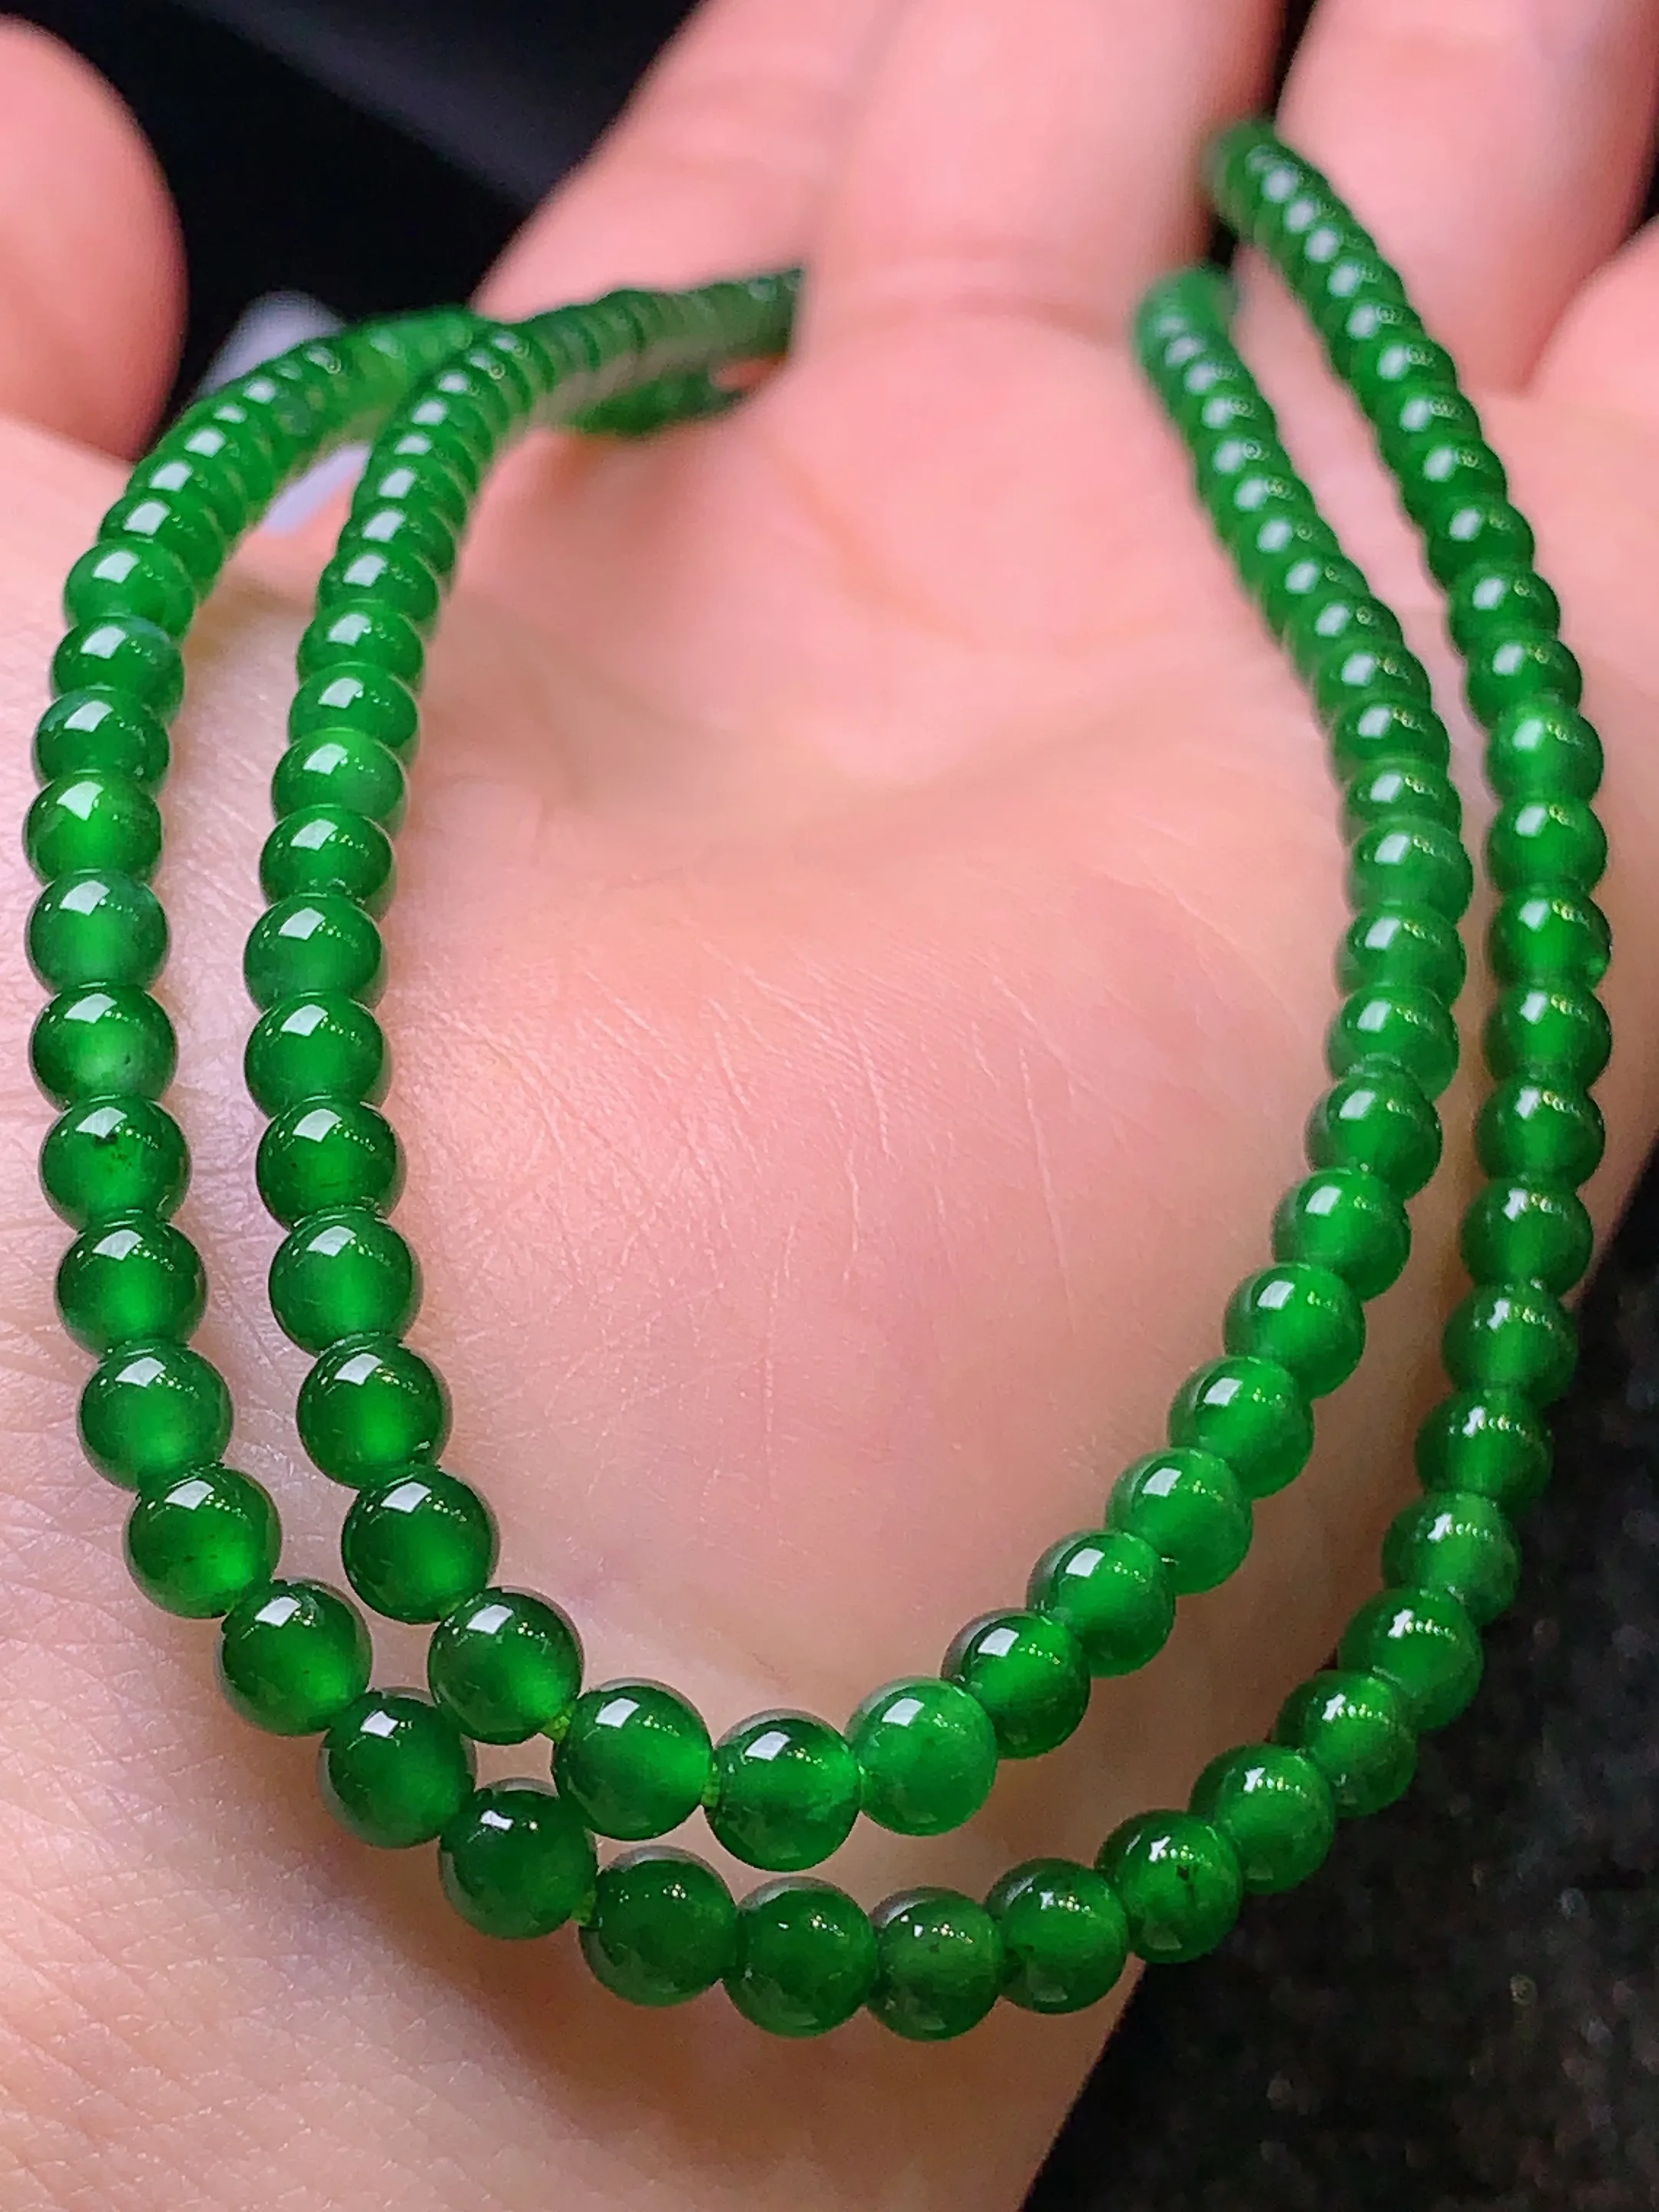 满绿圆珠项链 玉质细腻   色泽艳丽 圆润饱满 款式新颖时尚精美 取一尺寸4.2